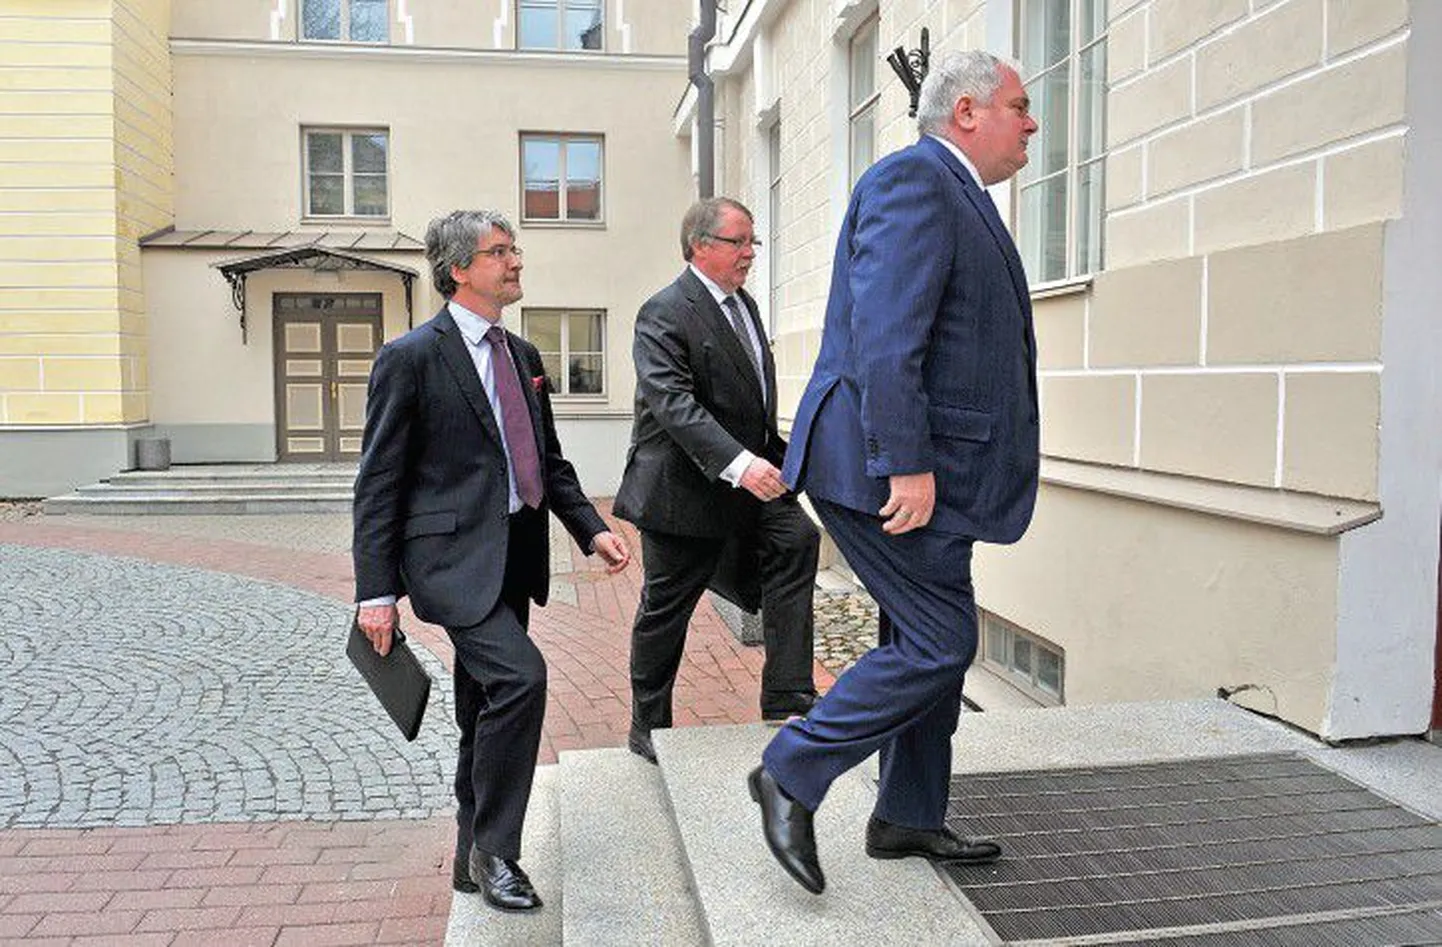 23 апреля представители Nord Stream во главе с исполнительным директором газопровода Маттиасом Варнигом (справа) побывали на Тоомпеа, где встречались с премьер-министром Андрусом Ансипом. После встречи Ансип признал, что вызывавшие опасения экологические угрозы реализованы не были.